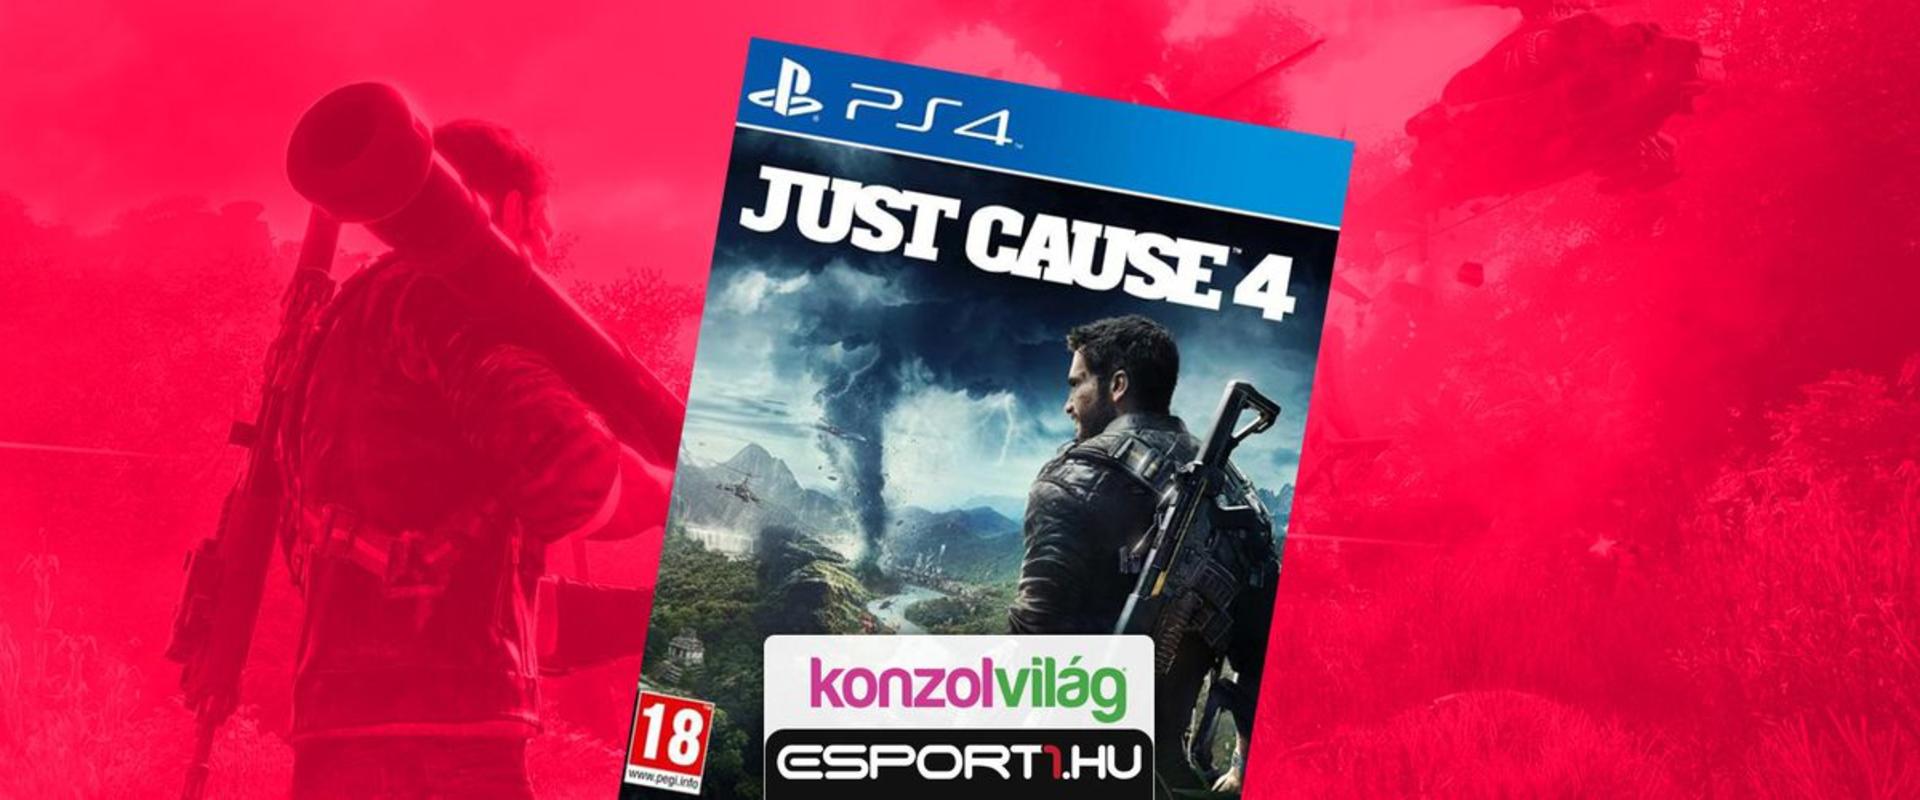 Berobbant az Esport1 közösségbe egy Just Cause 4 PS4 példány, nyerd meg Te!